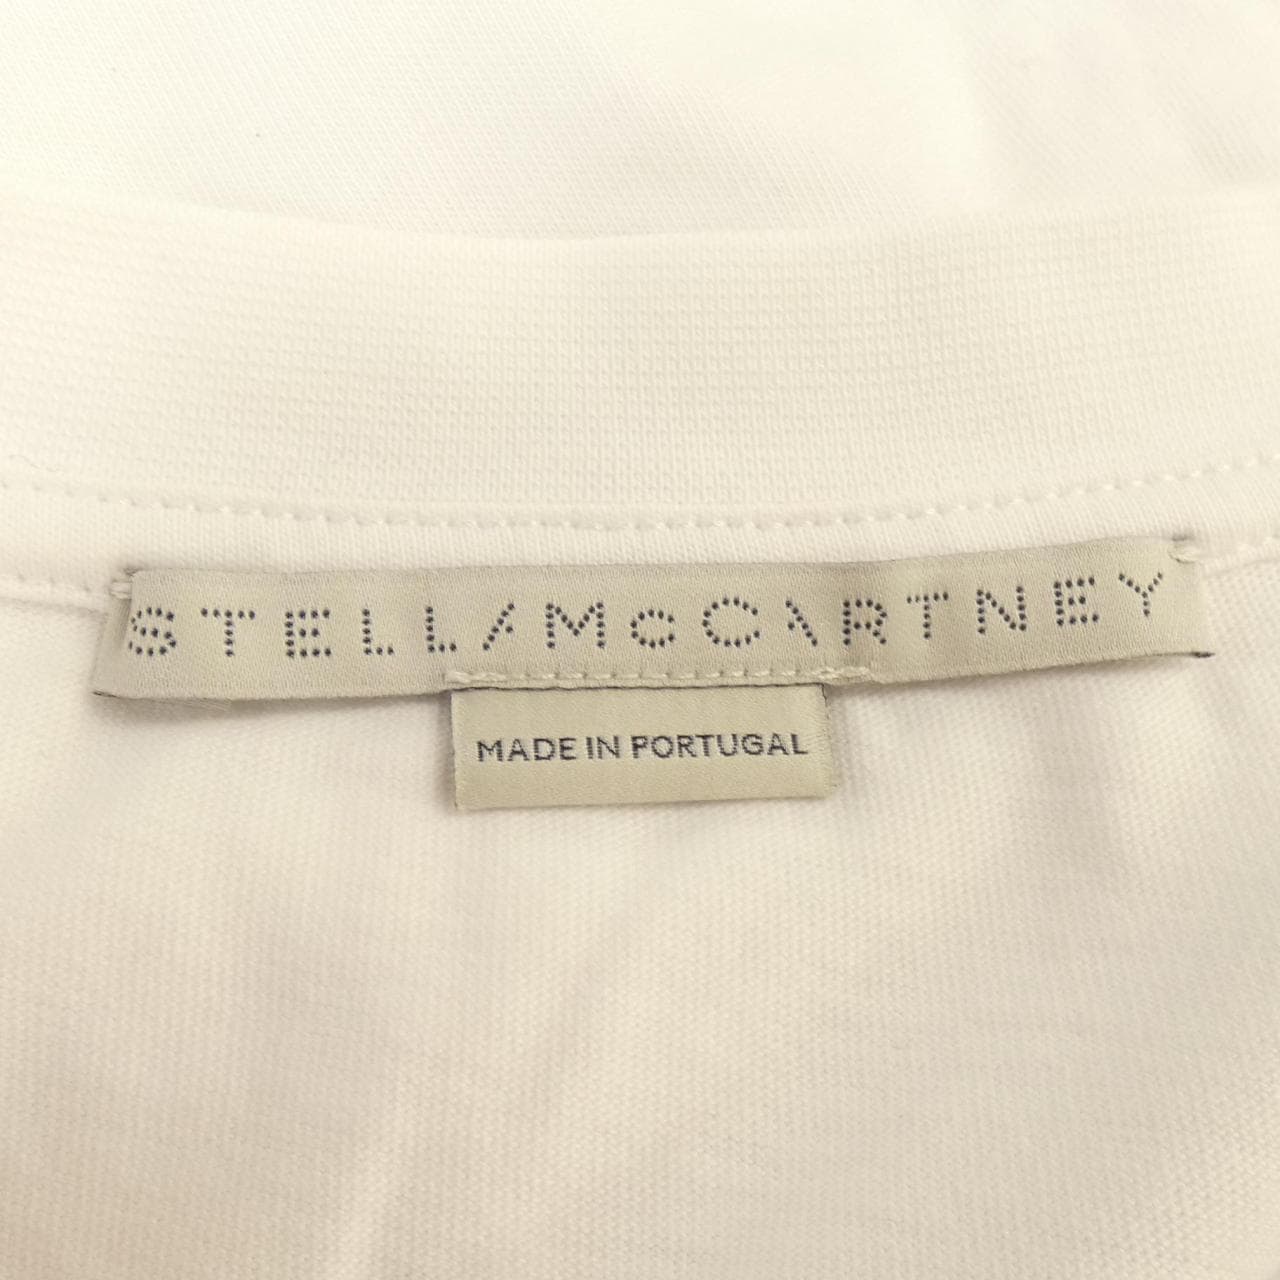 ステラマッカートニー STELLA MCCARTNEY Tシャツ